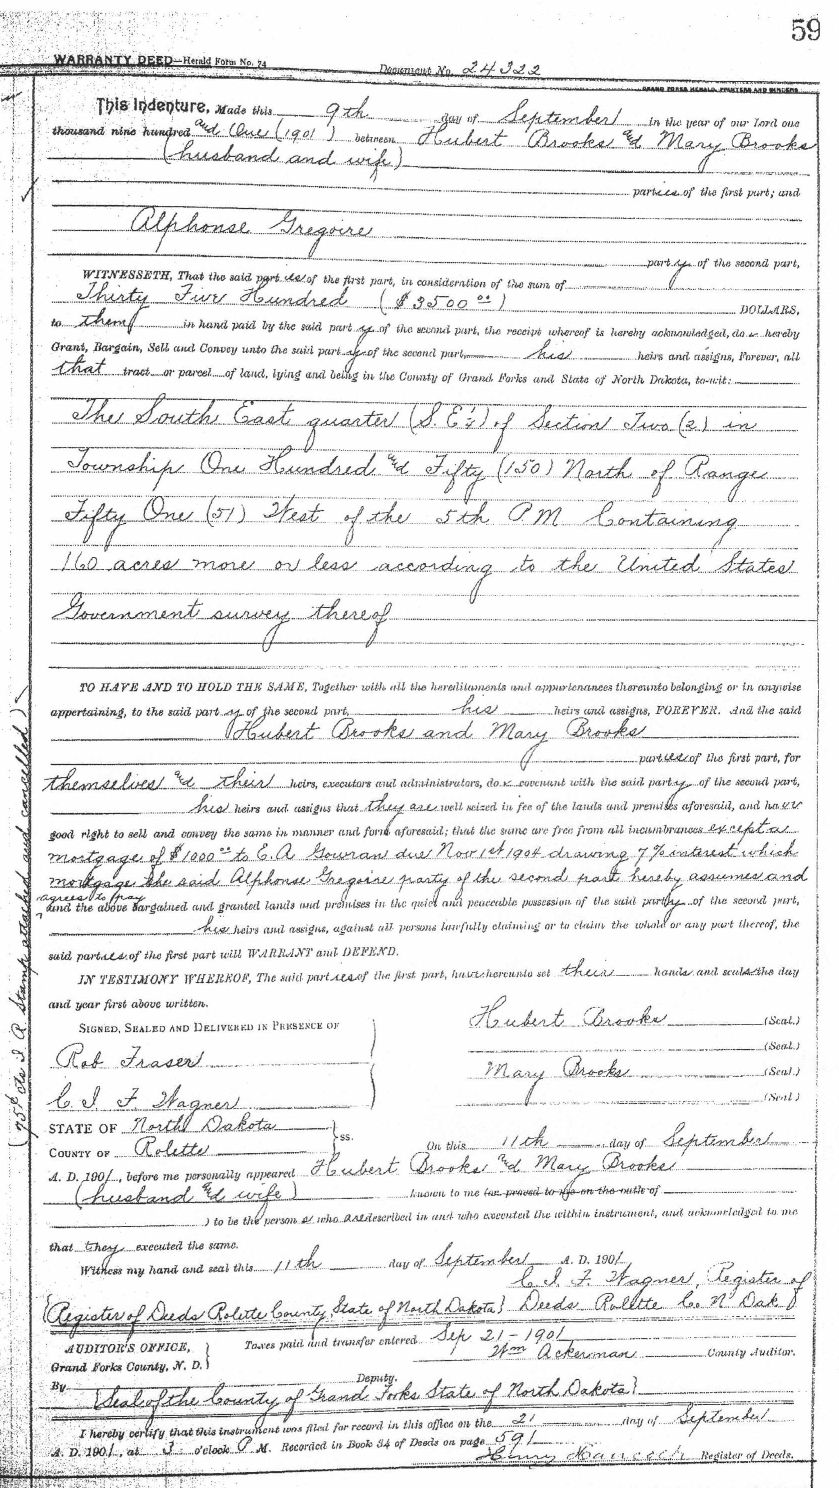 Warranty Deed Transfering Property from Hubert Brooks to Alphonse Gregoire